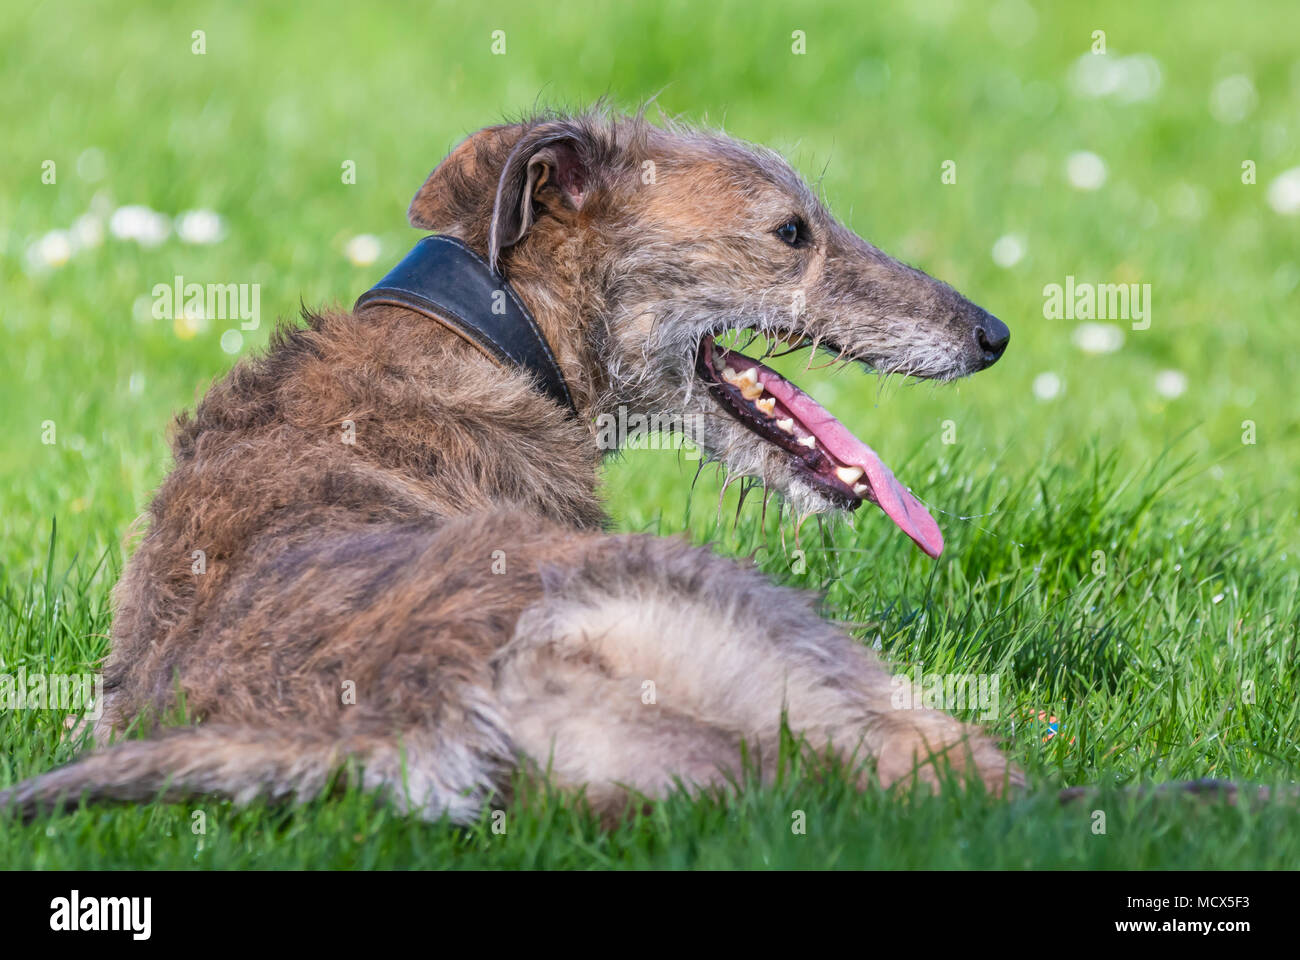 Femmina scottish deerhound Lurcher dog sitter su erba in appoggio sotto il sole di primavera nel Regno Unito. Foto Stock